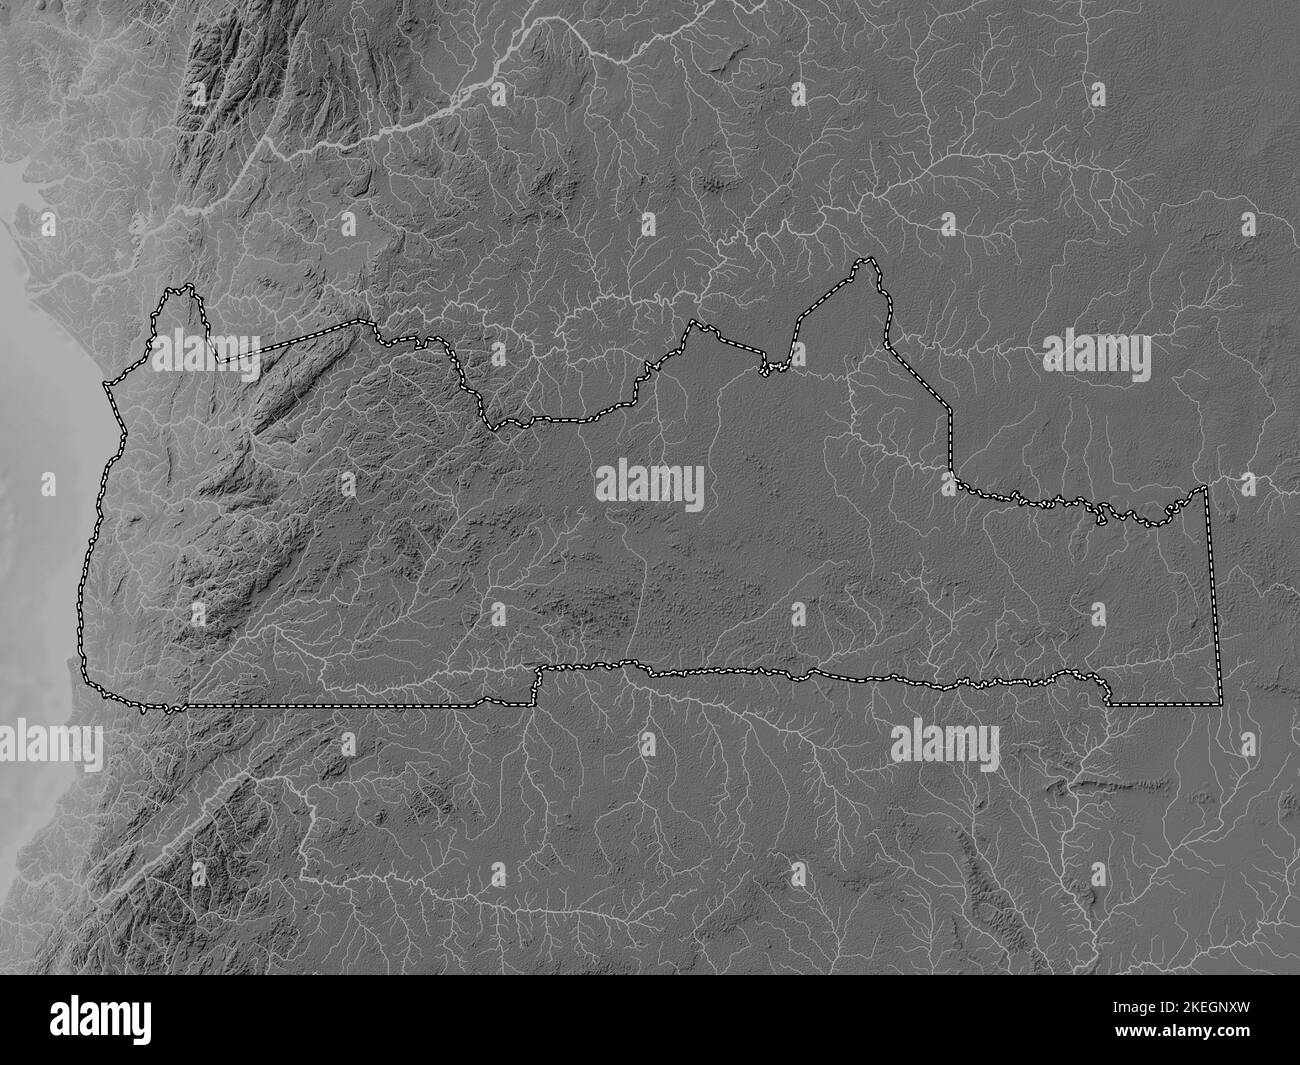 Sud, région du Cameroun. Carte d'altitude en niveaux de gris avec lacs et rivières Banque D'Images